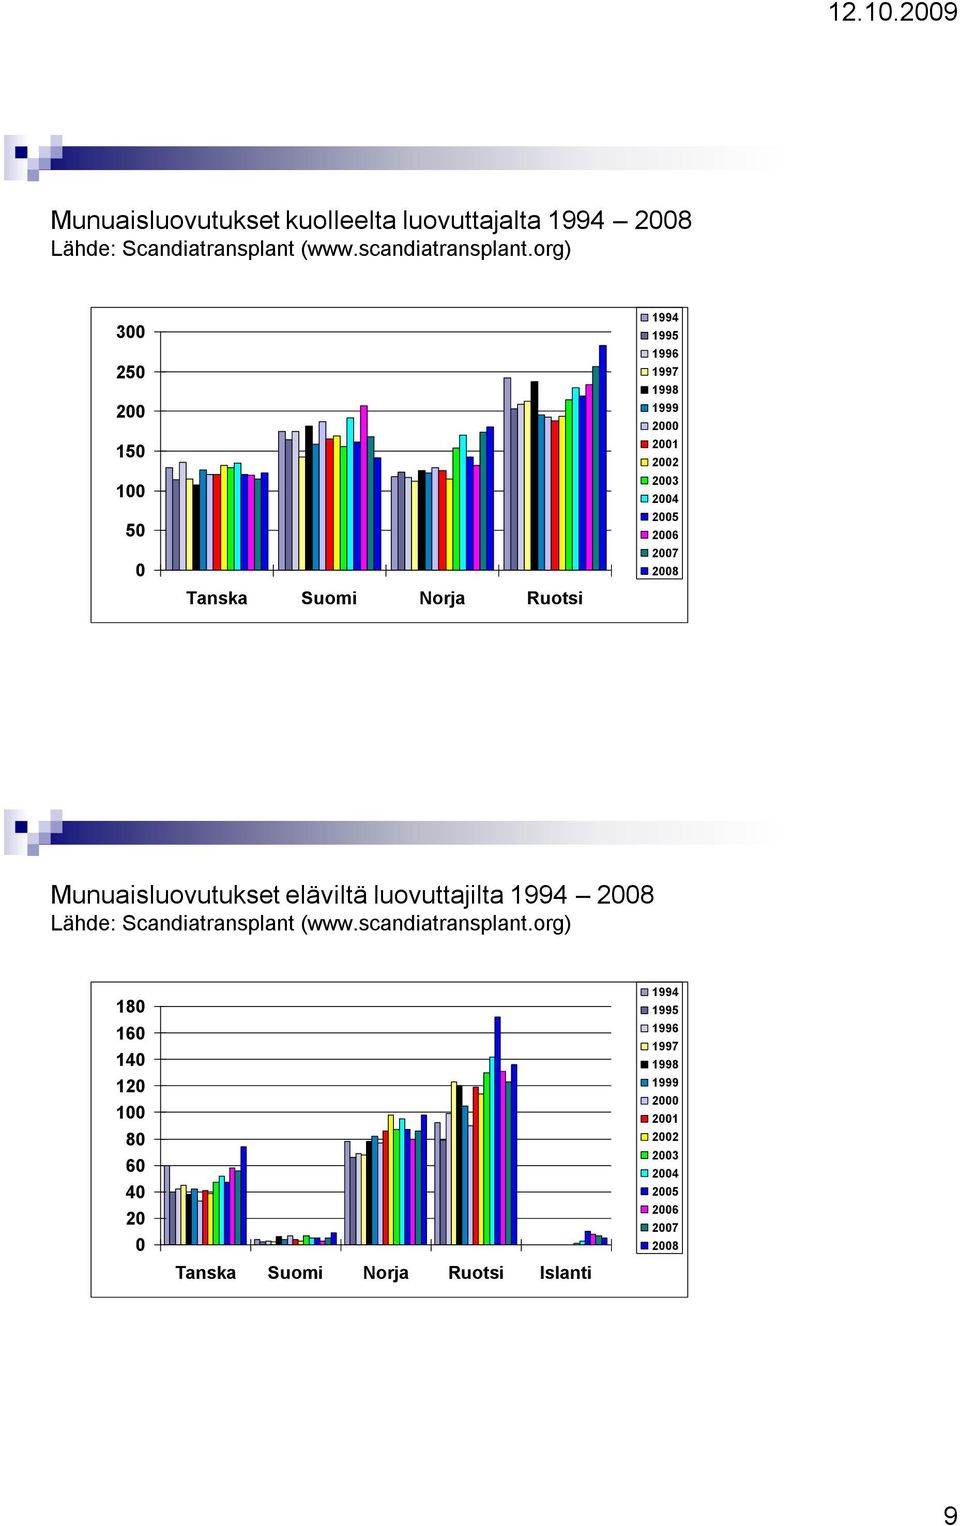 Munuaisluovutukset eläviltä luovuttajilta 1994 2008 Lähde: Scandiatransplant (www.scandiatransplant.